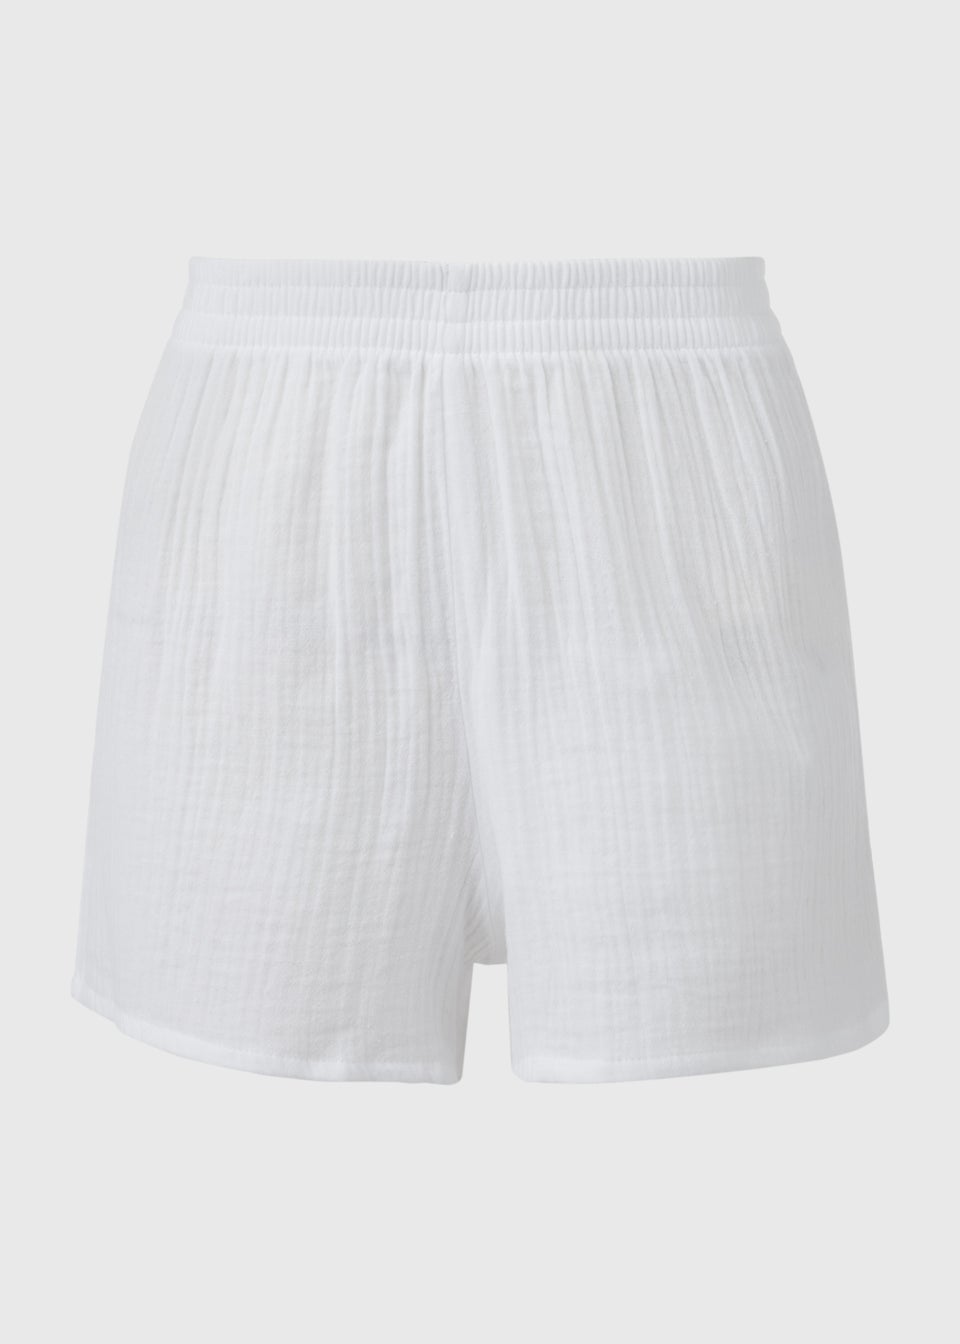 White Cloth Shorts